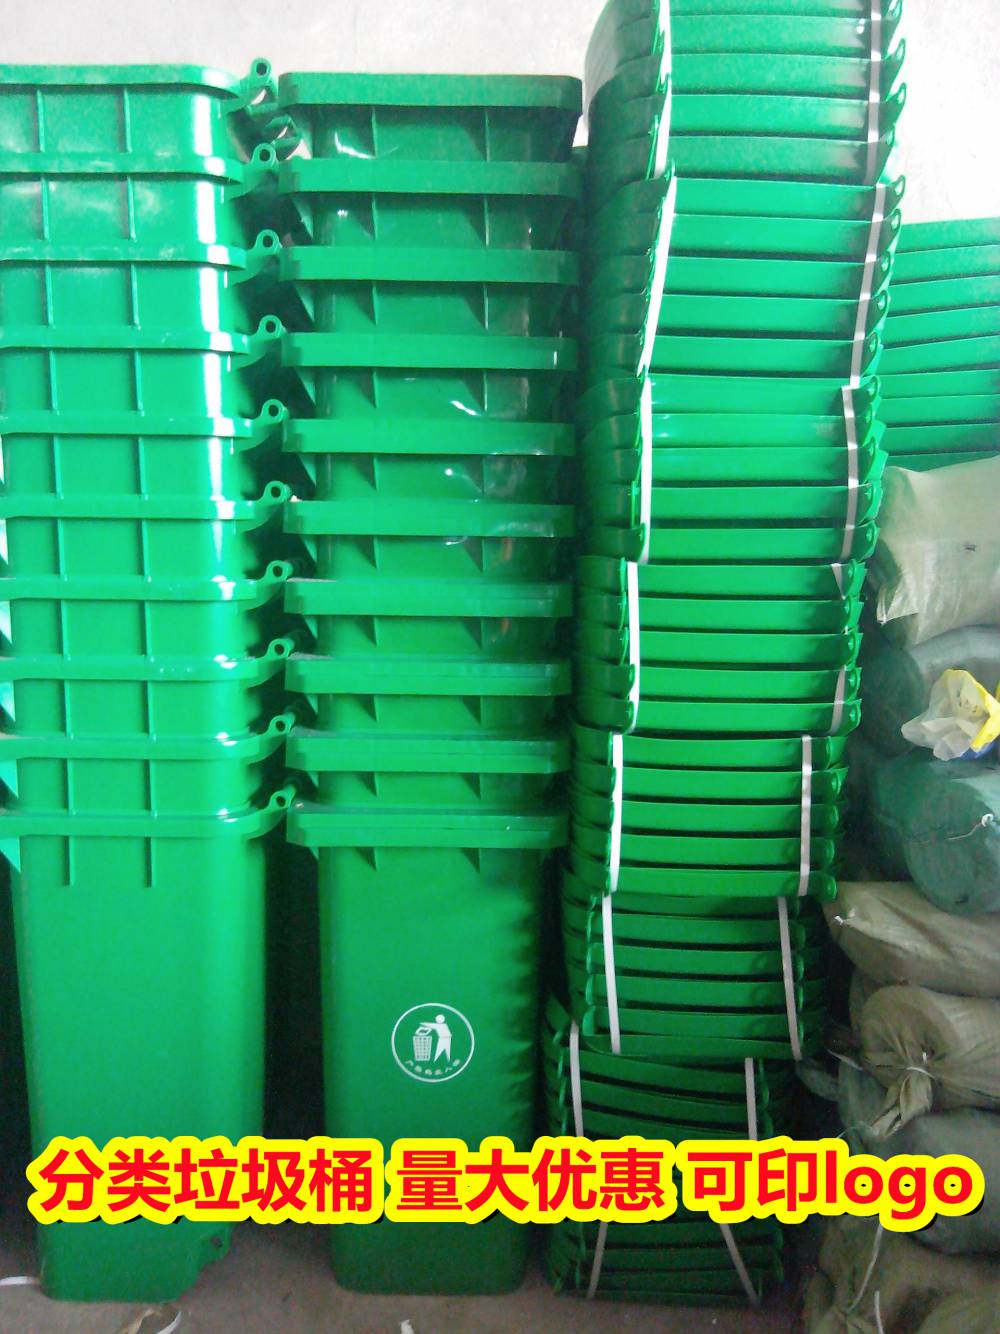 园区垃圾箱大量批到广西贵港,室外不锈钢垃圾桶便宜批